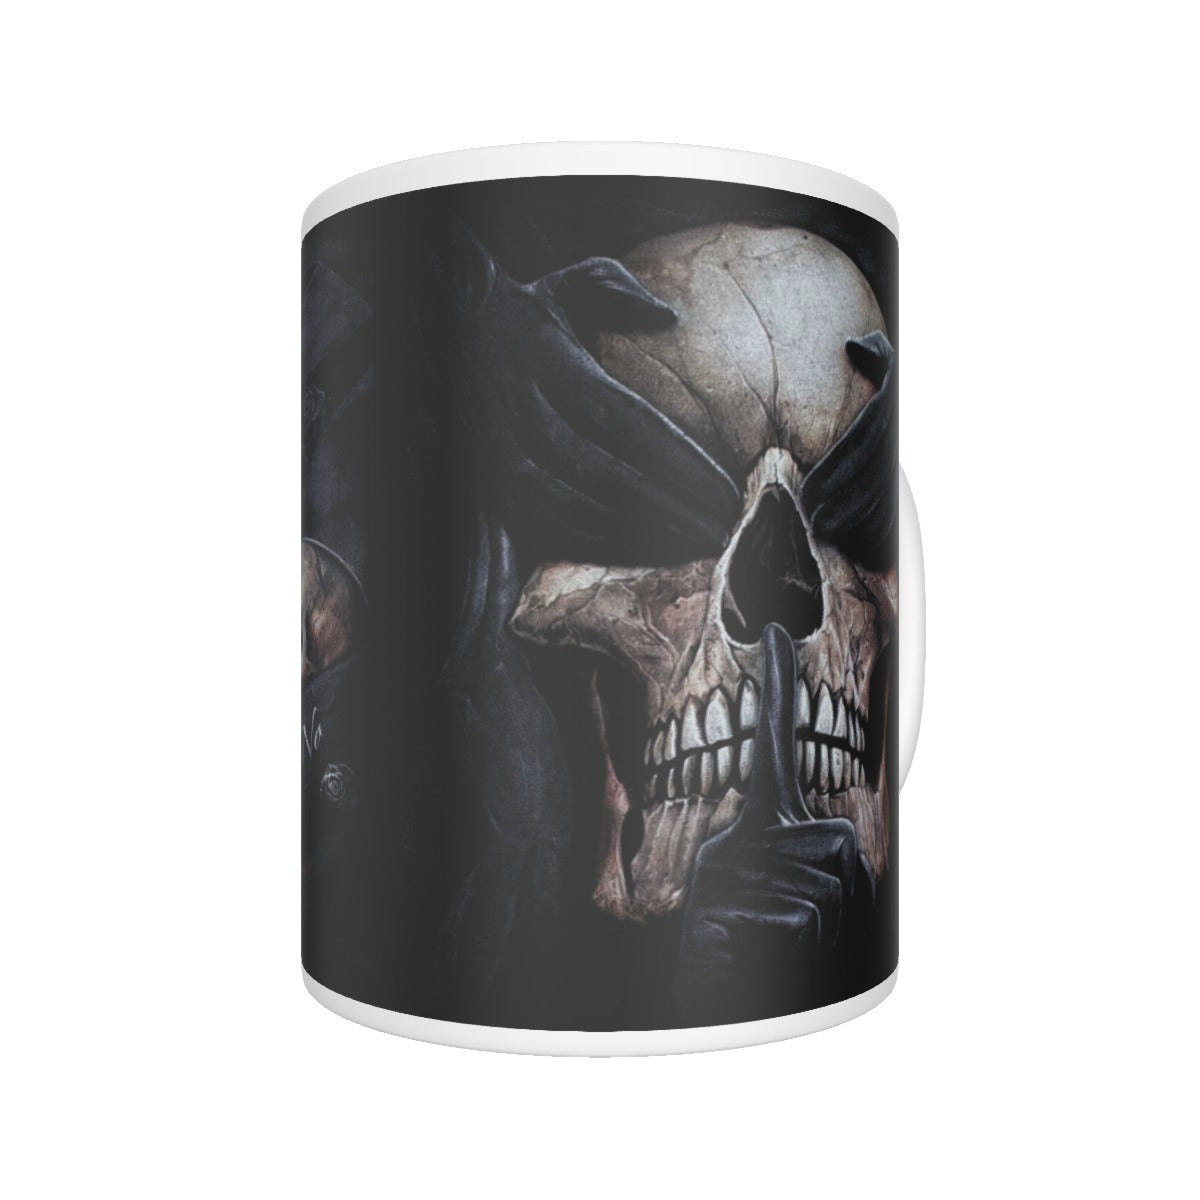 No see no hear no speak evils ceramics mug, skull tumbler cup